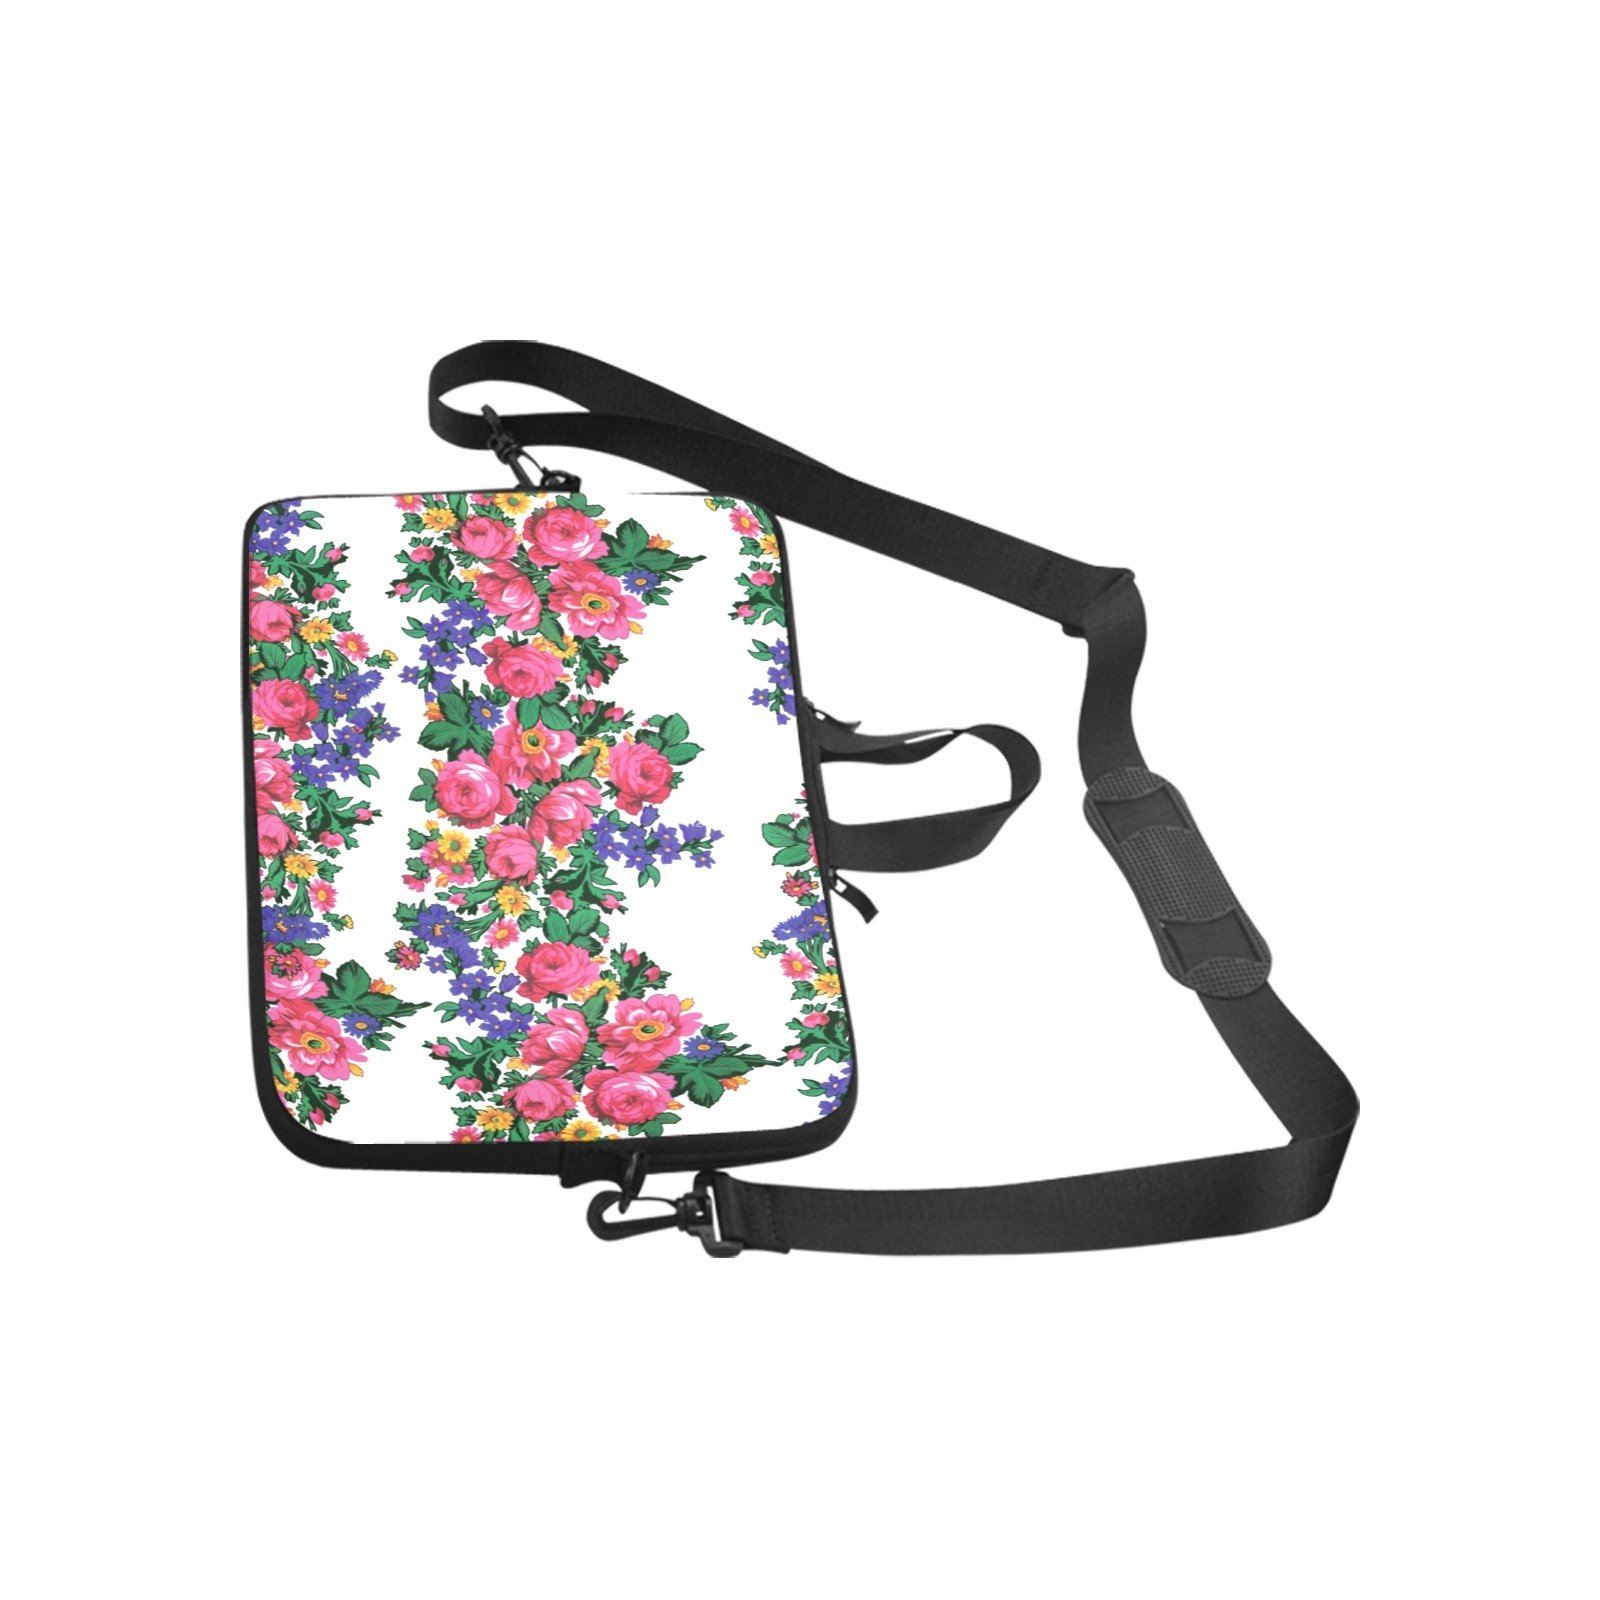 Kokum's Revenge White Laptop Handbags 10" bag e-joyer 